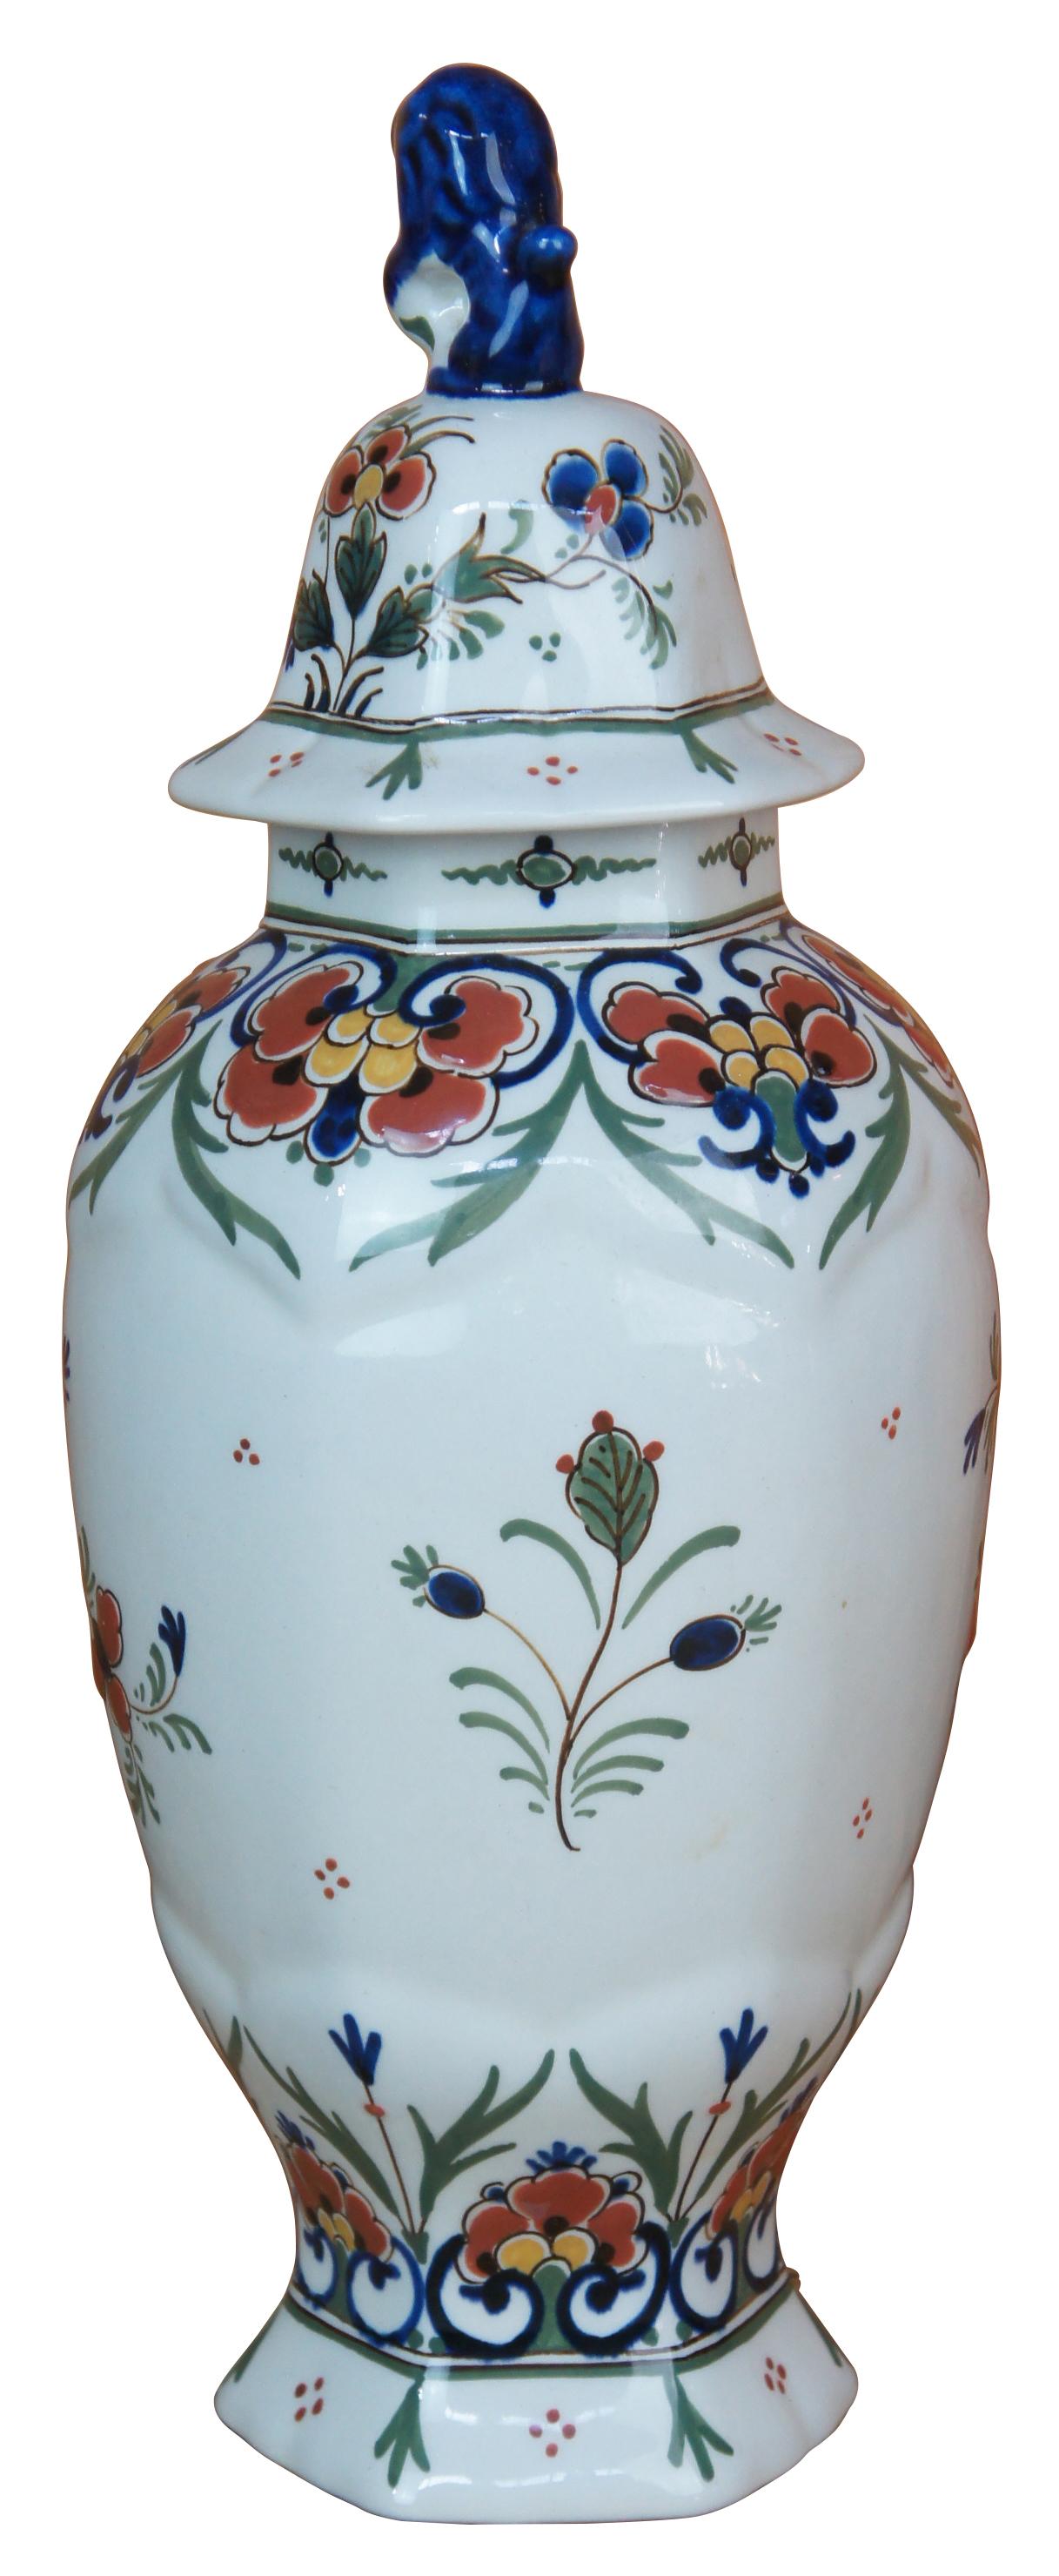 Royal Delft De Porceleyne Fles lidded jar. Hand painted with flowers and figural fu dog lid. Marked along underside.
 